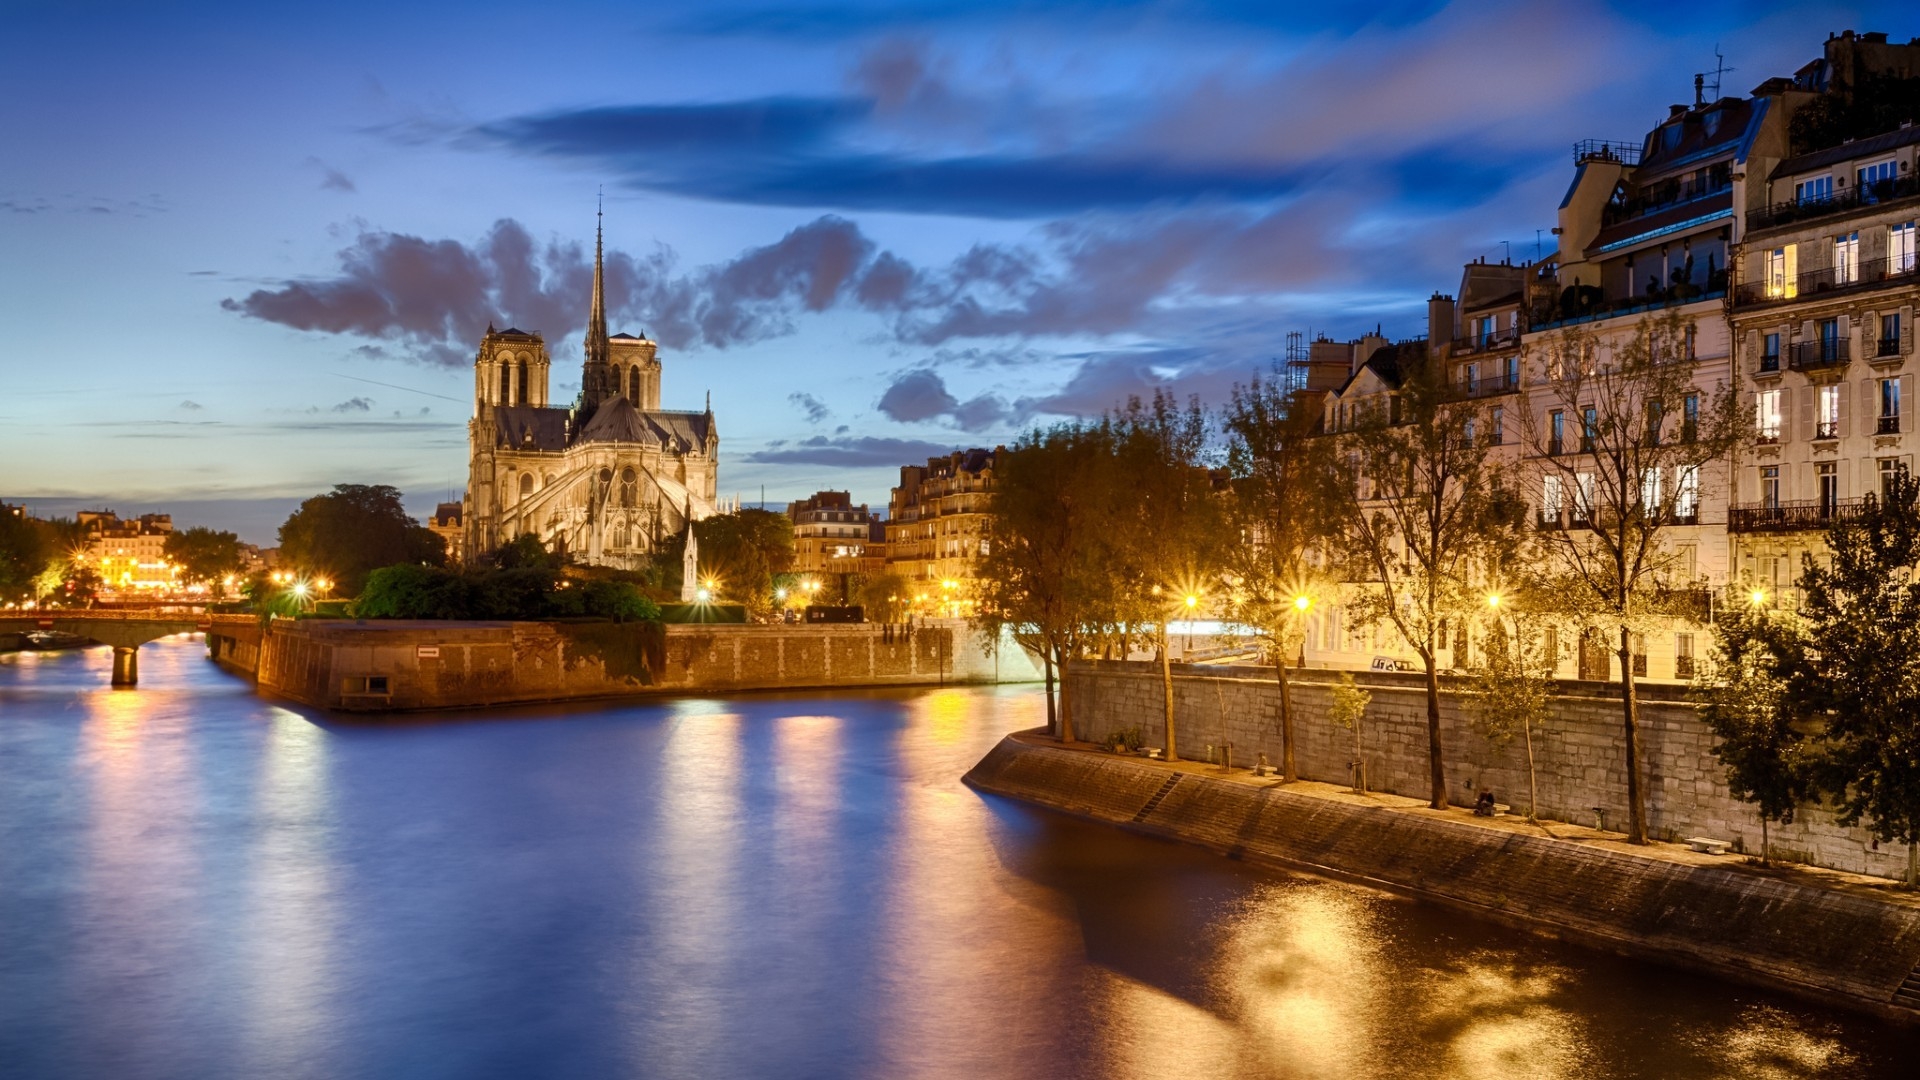 View of Notre Dame de Paris for 1920 x 1080 HDTV 1080p resolution